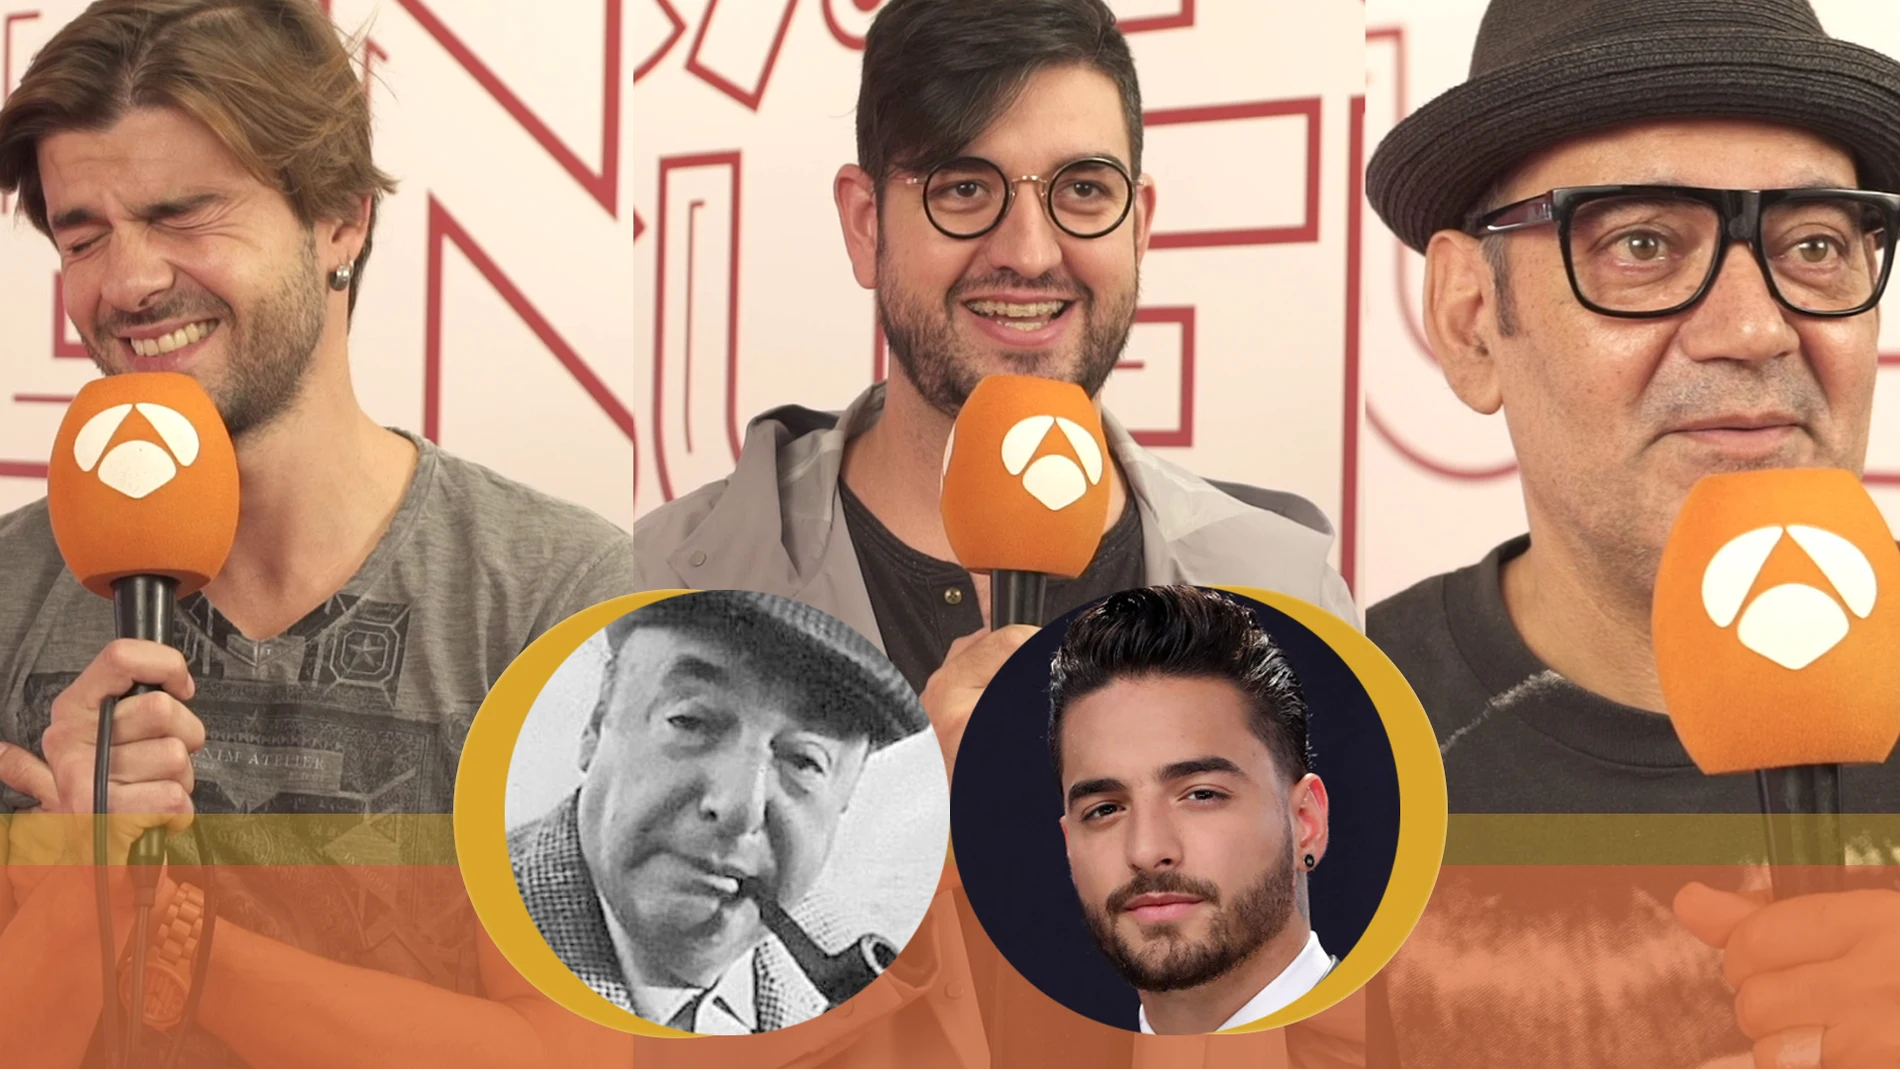 Jordi Coll, Manu Sáchez y José Corbacho se someten al test de Maluma y Neruda: ¿De quién es la frase?